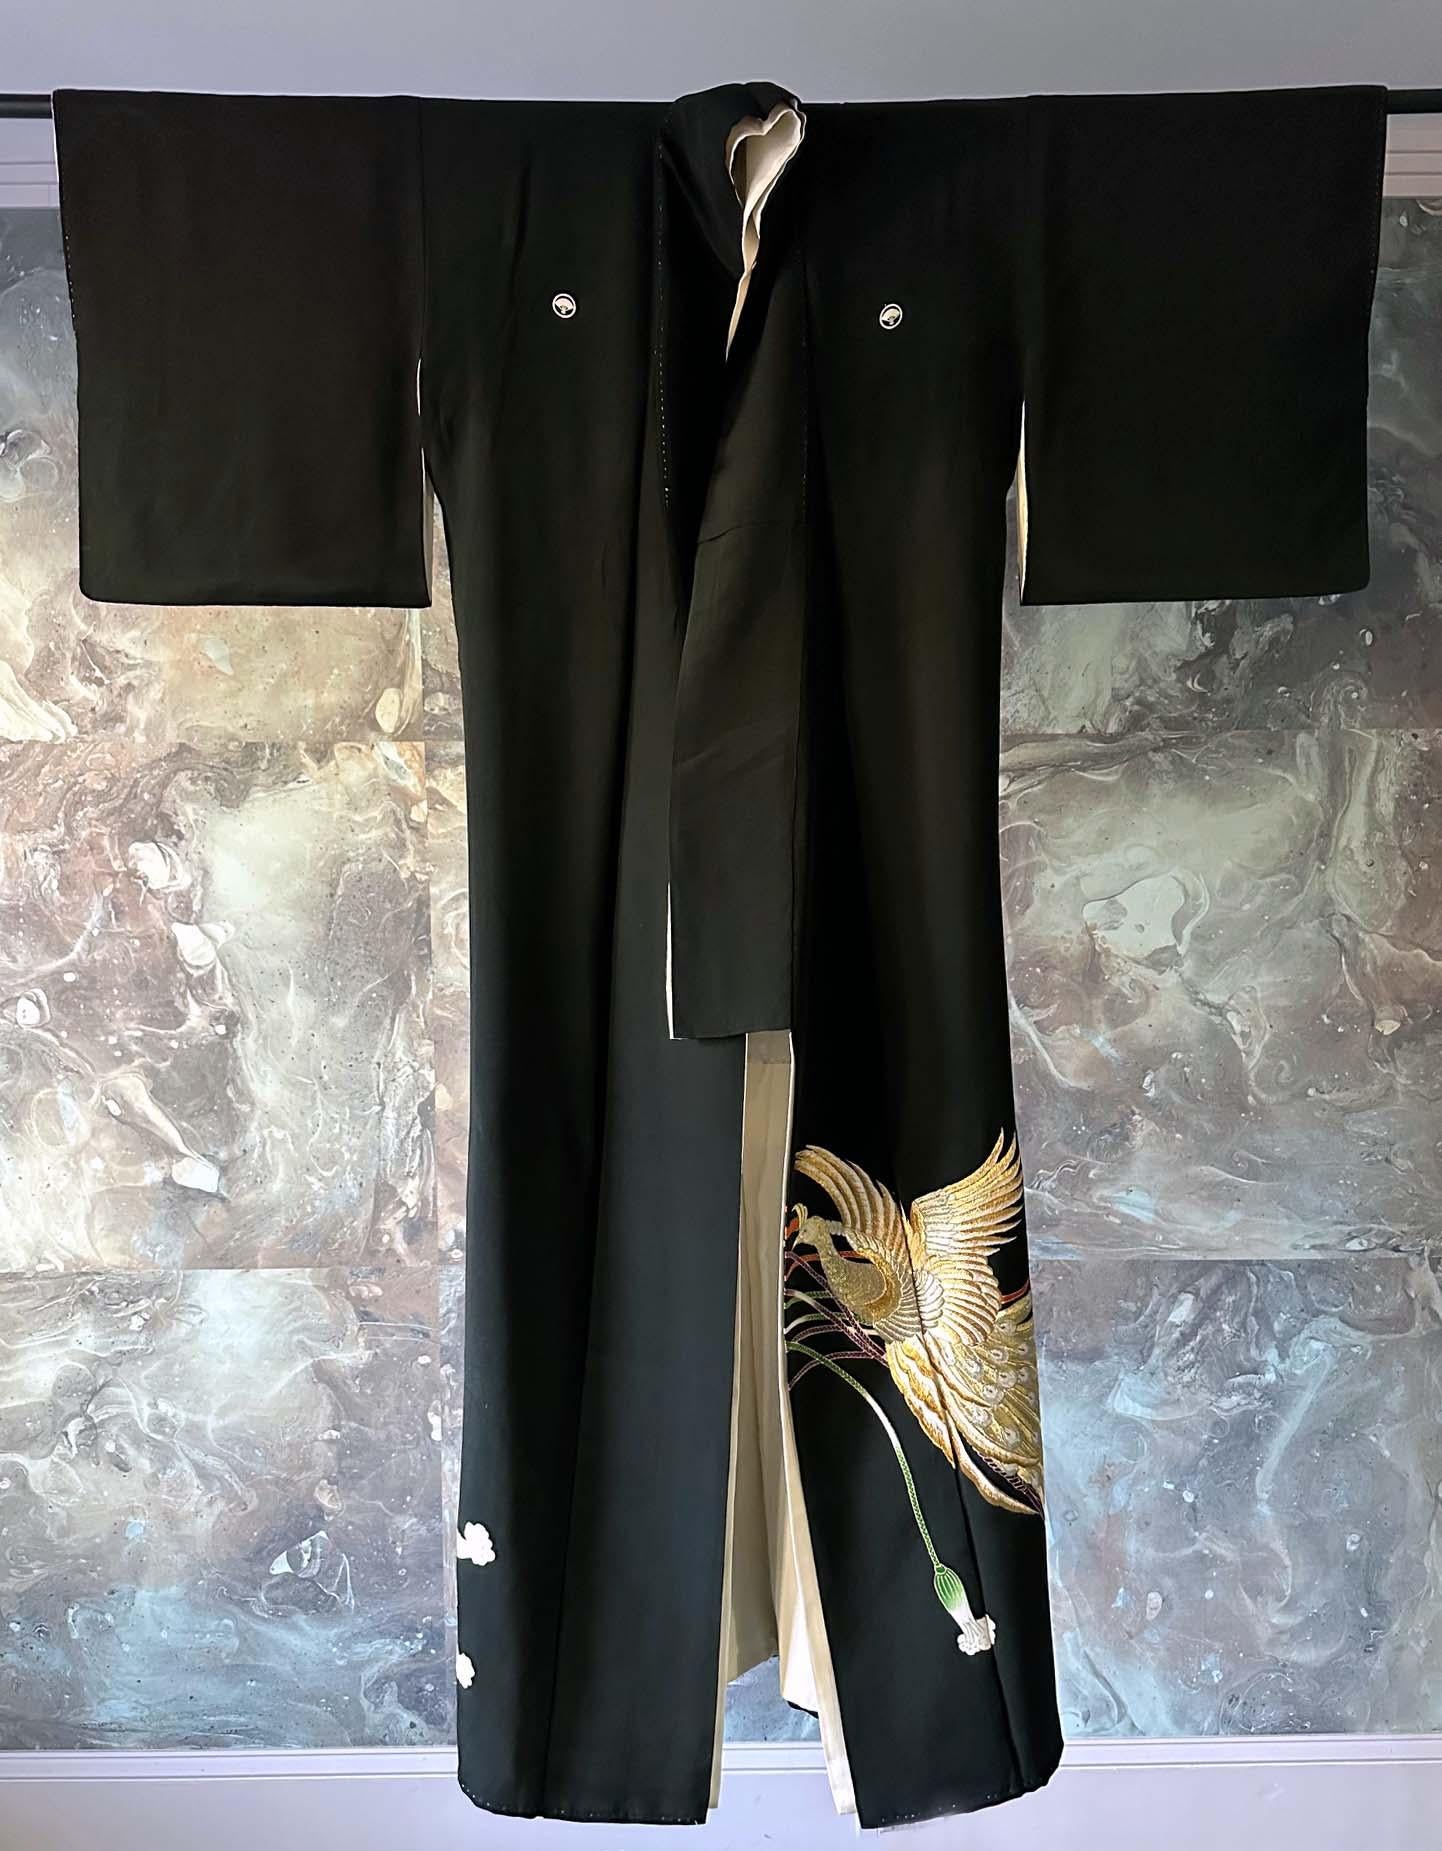 Japanischer Kuro Tomesode Kimono aus Seide, ca. 1950-1980er Jahre. Kuro Tomesode ist ein Kleid für verheiratete Frauen für die formellsten Anlässe, das den Abendkleidern im Westen entspricht. Es ist insgesamt schwarz und nur auf der Unterseite mit